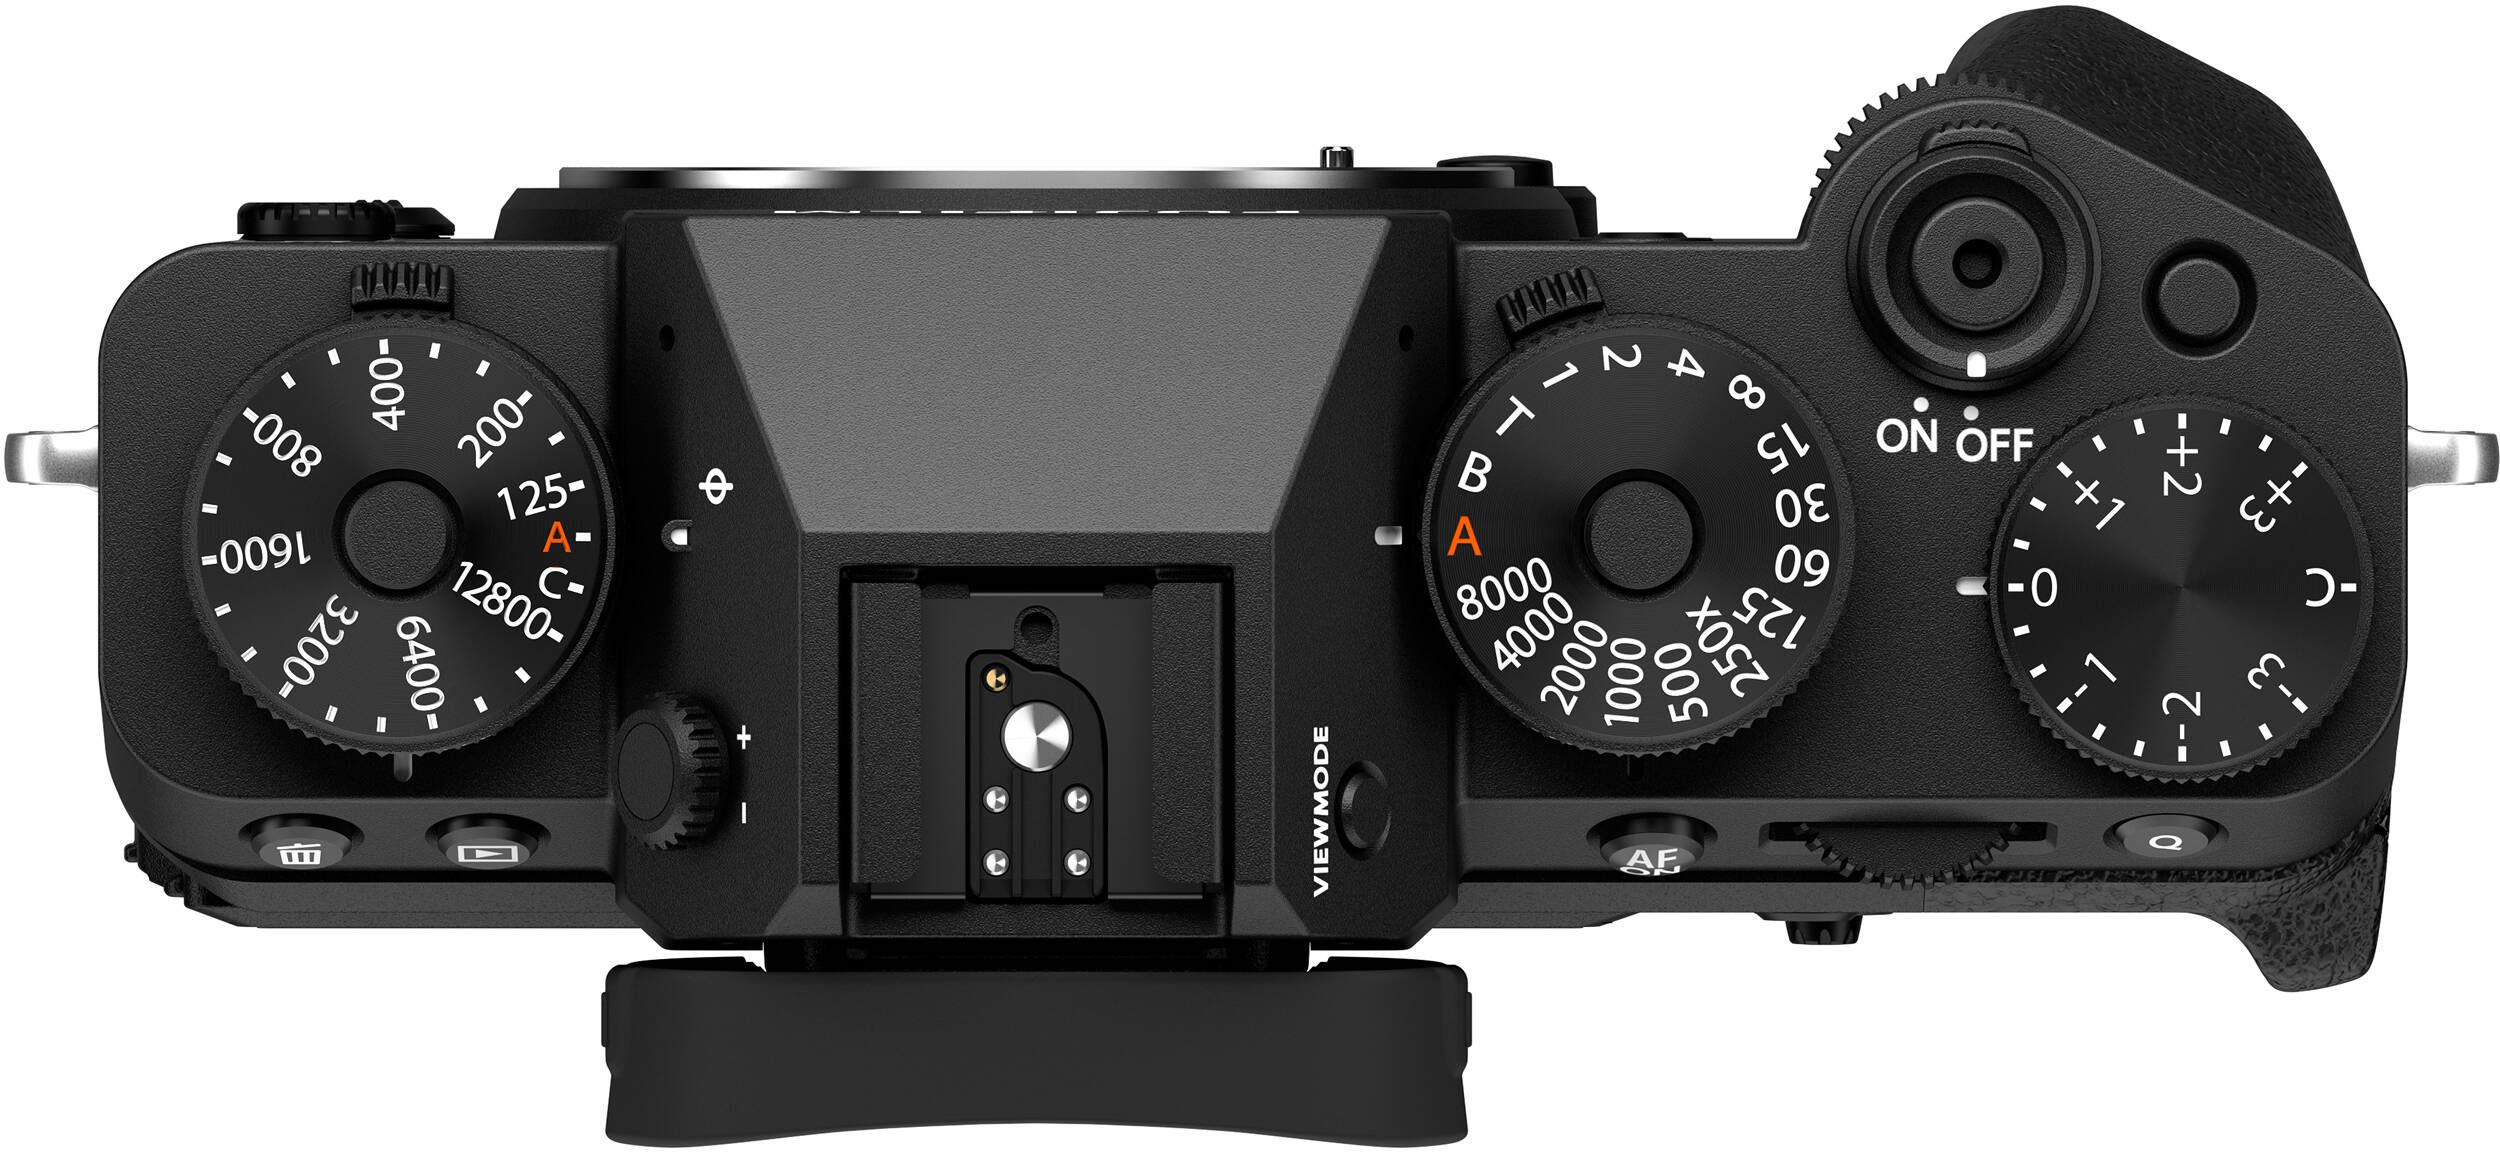 Фотоаппарат FUJIFILM X-T5 + XF 16-50mm F2.8-4.8R LM WR Black (16842565) фото 9